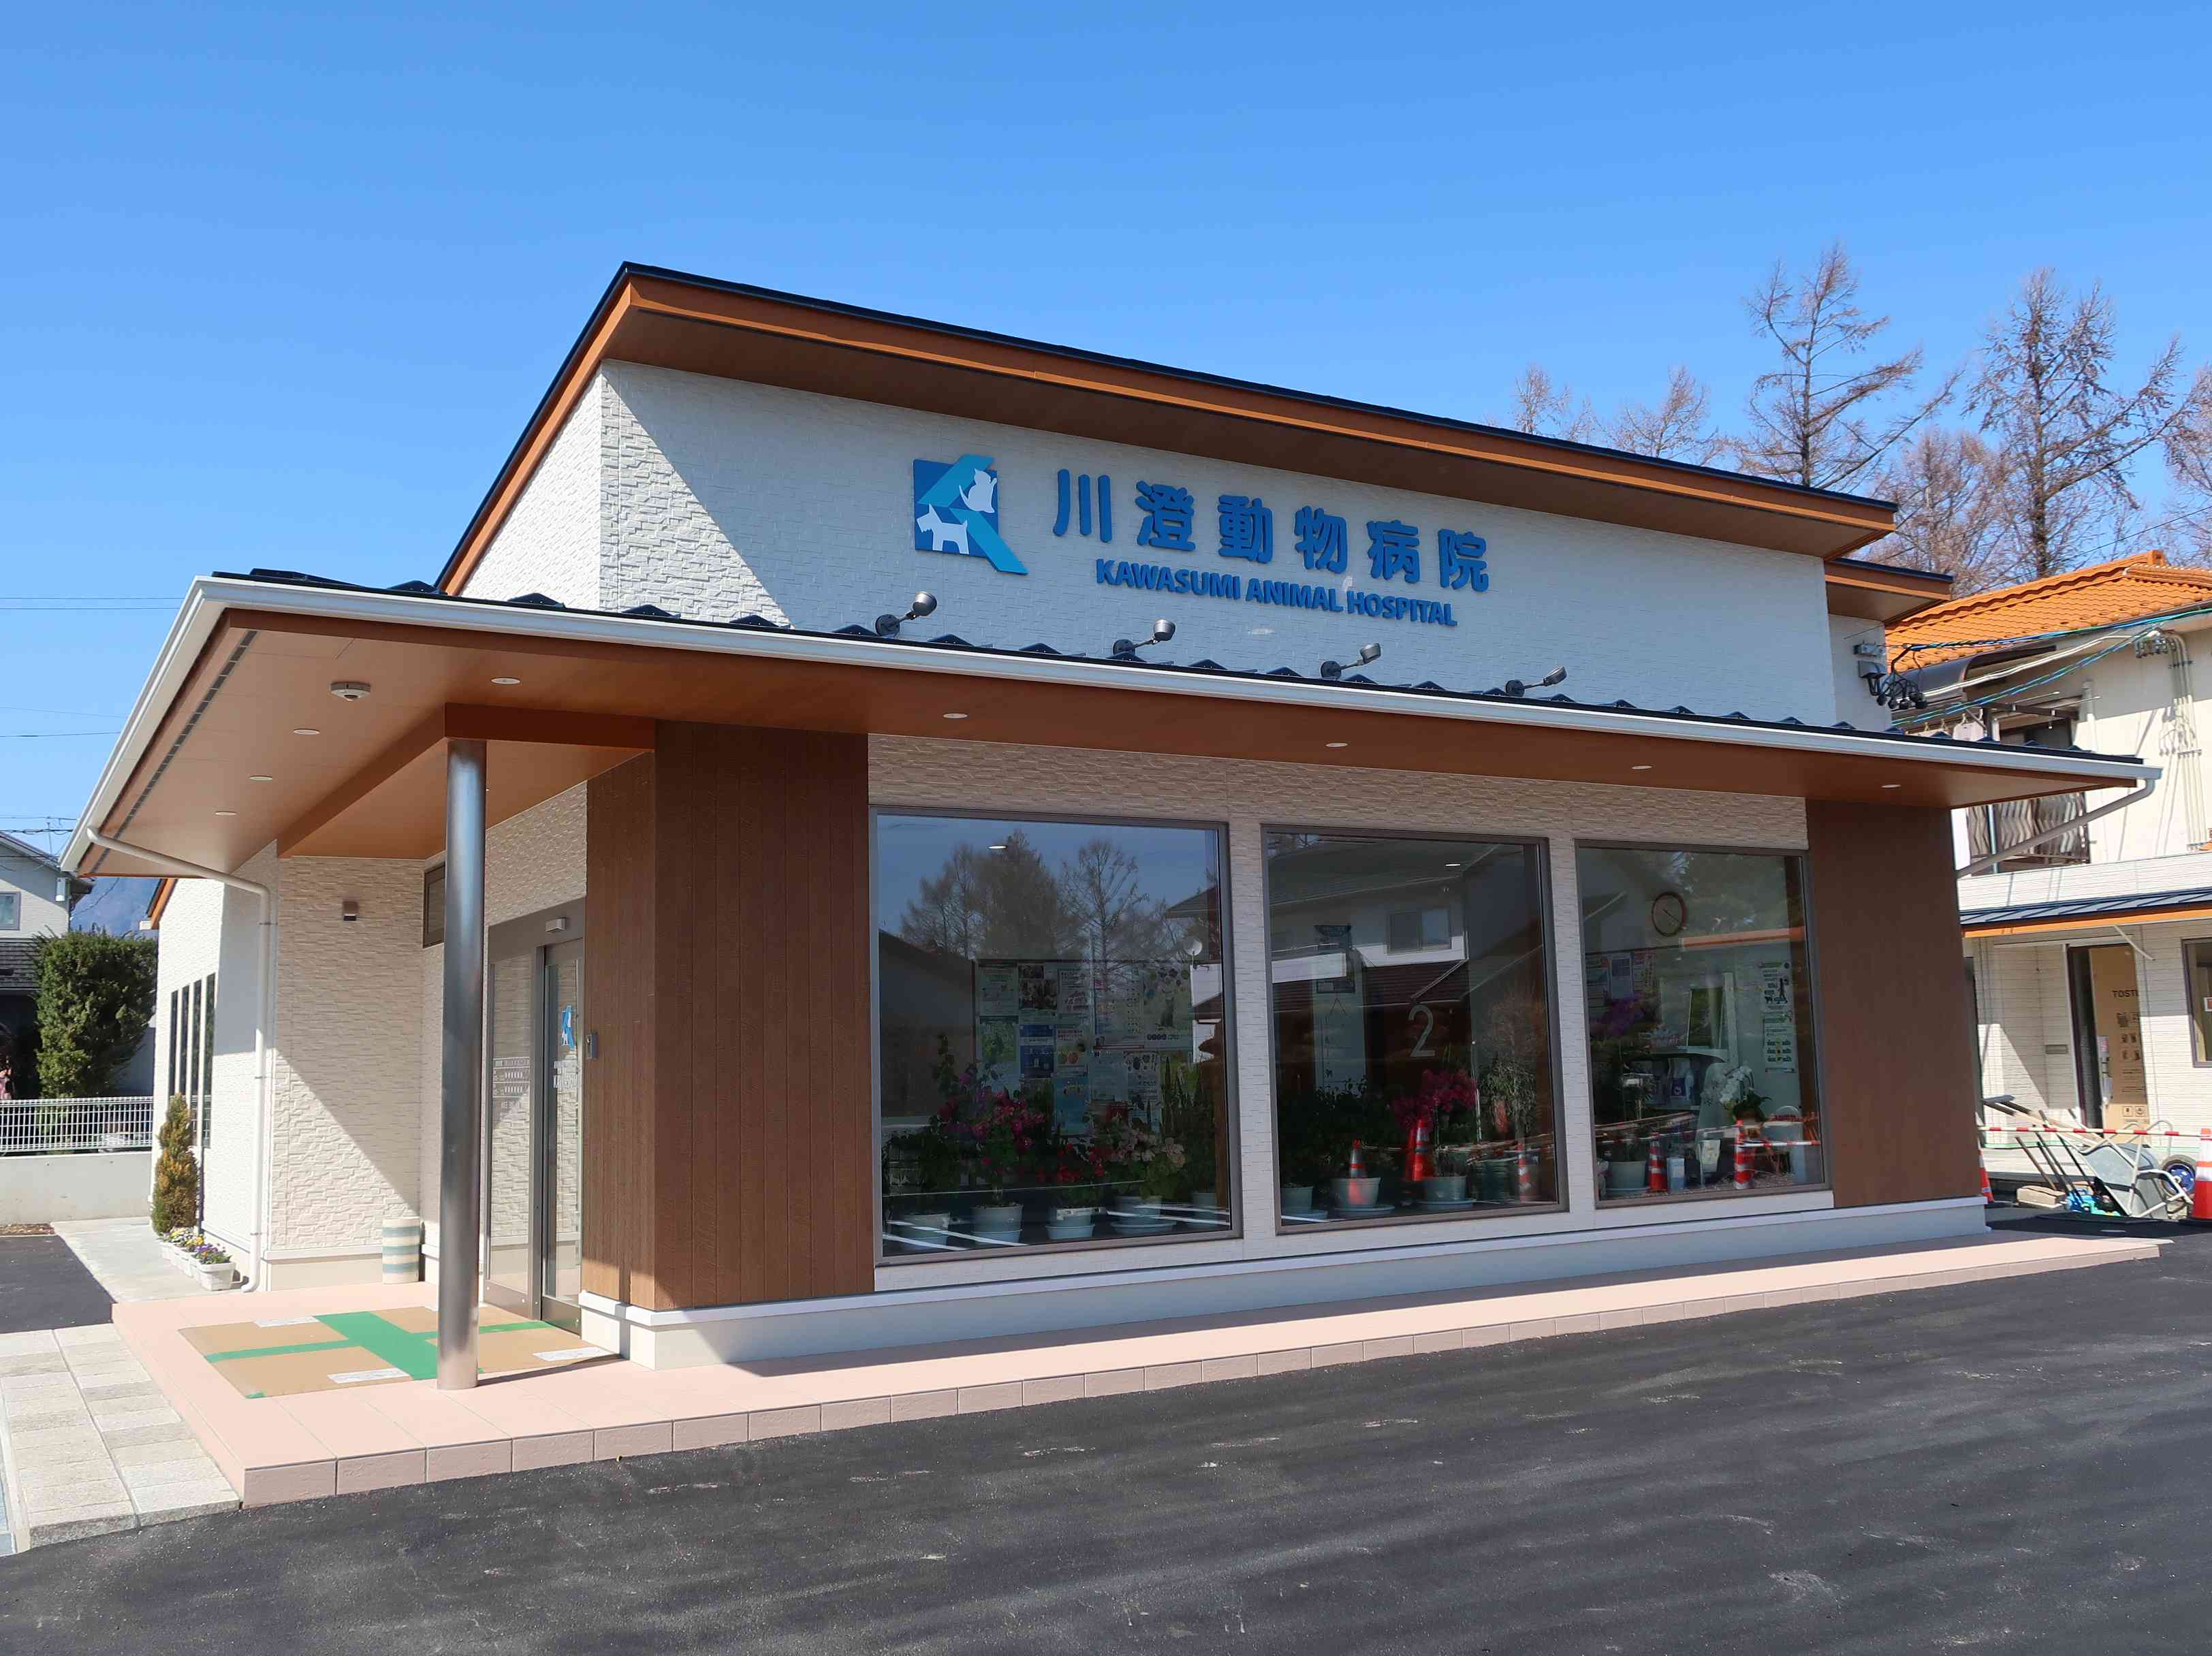 kawasumi animal hospital